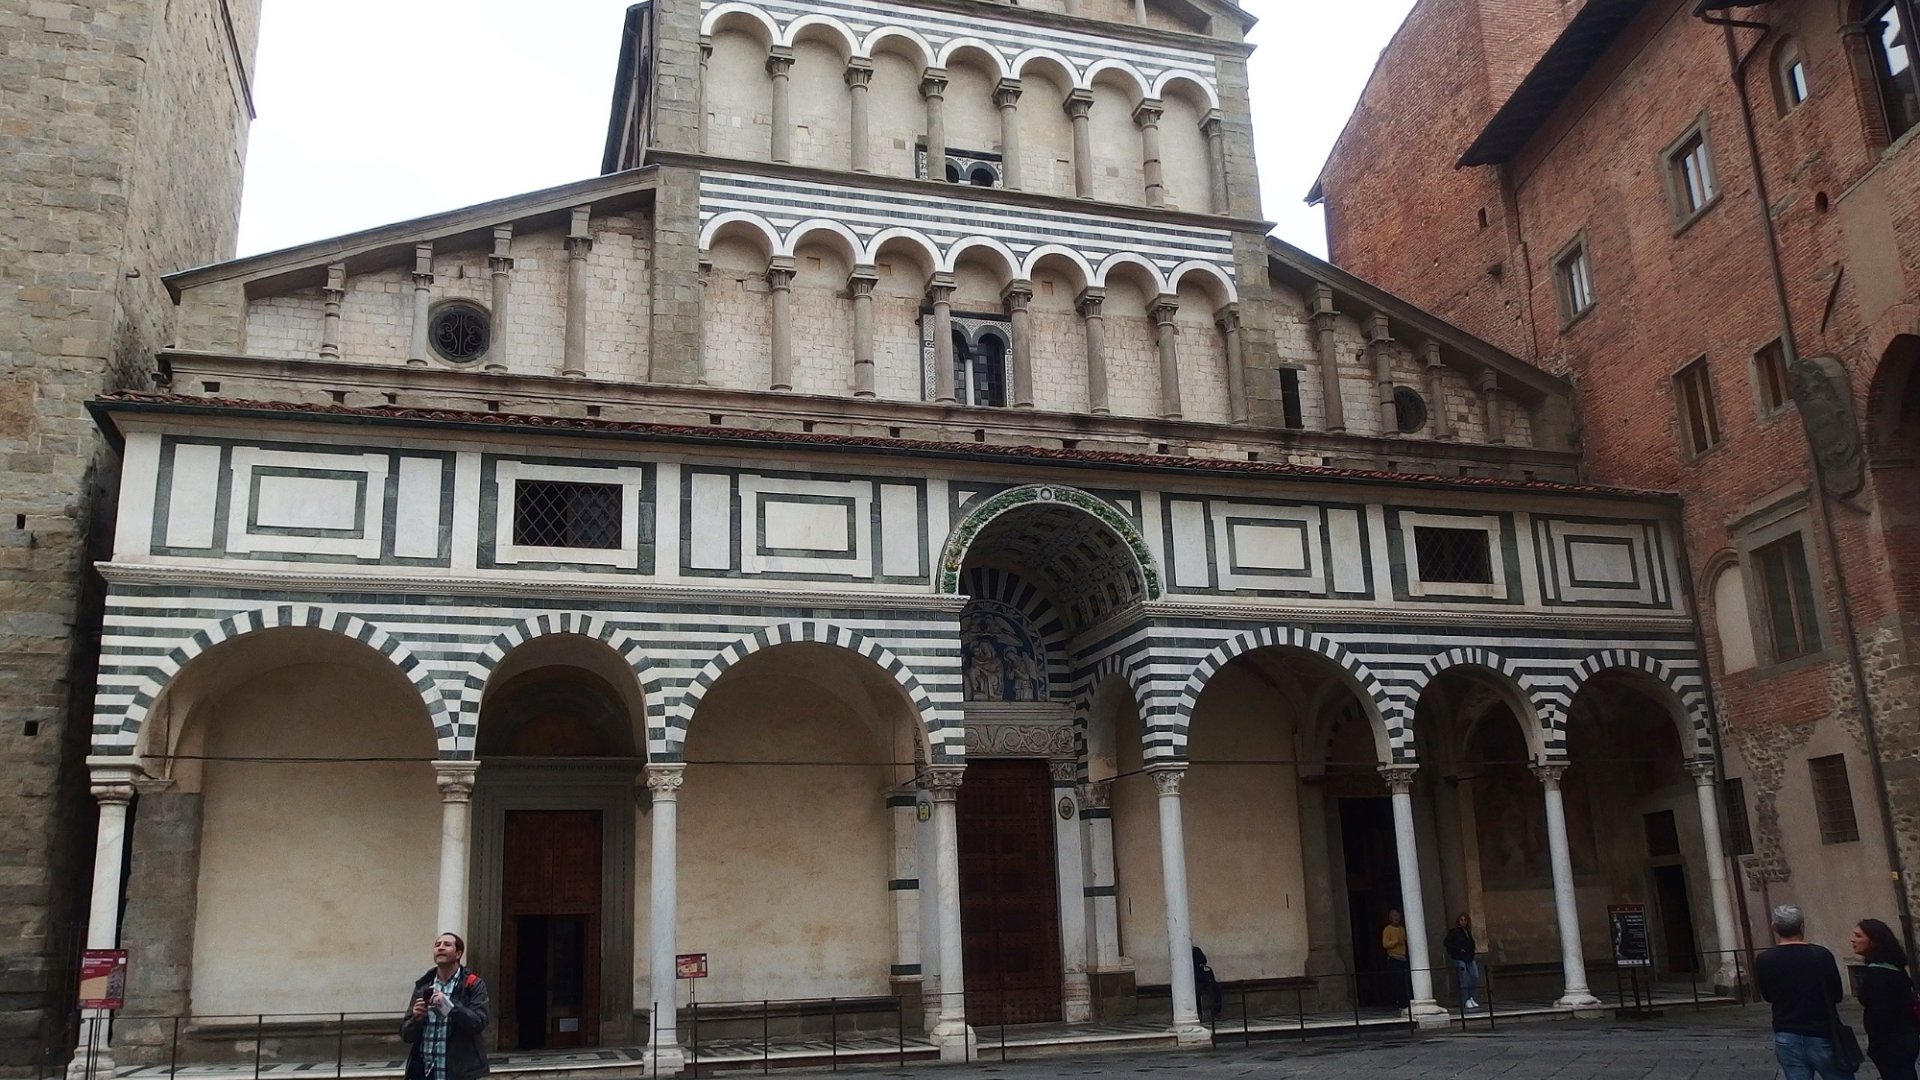 Facciata della Cattedrale di San Zeno, Pistoia